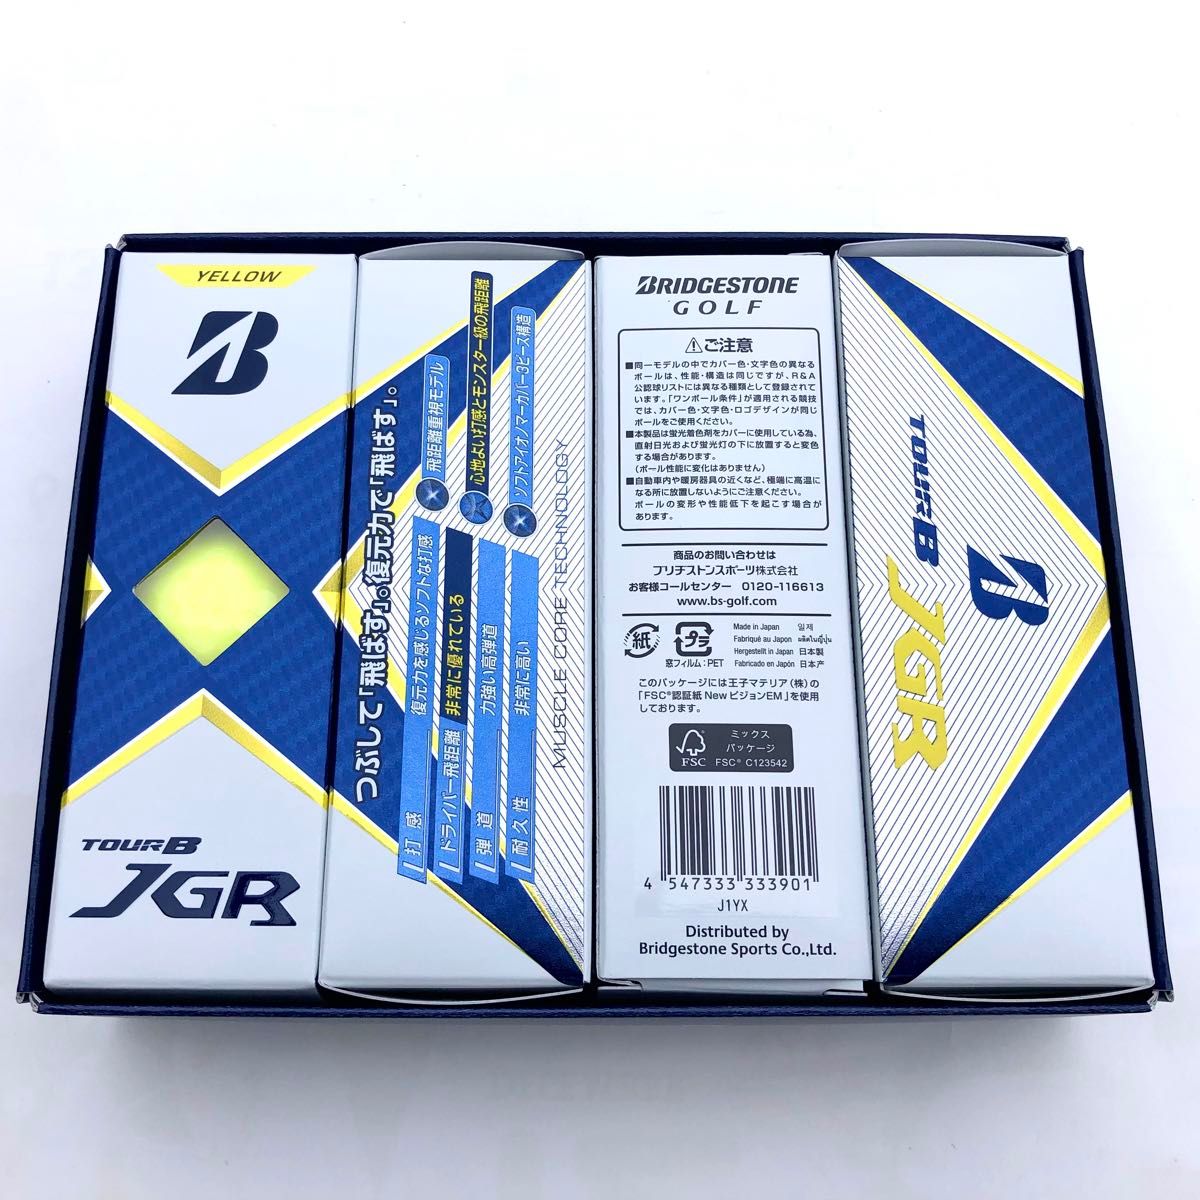 【在庫限り・新品・郵便局発送】ゴルフボール ブリヂストン TOUR B JGR 2021 イエロー yellow 1ダース12個